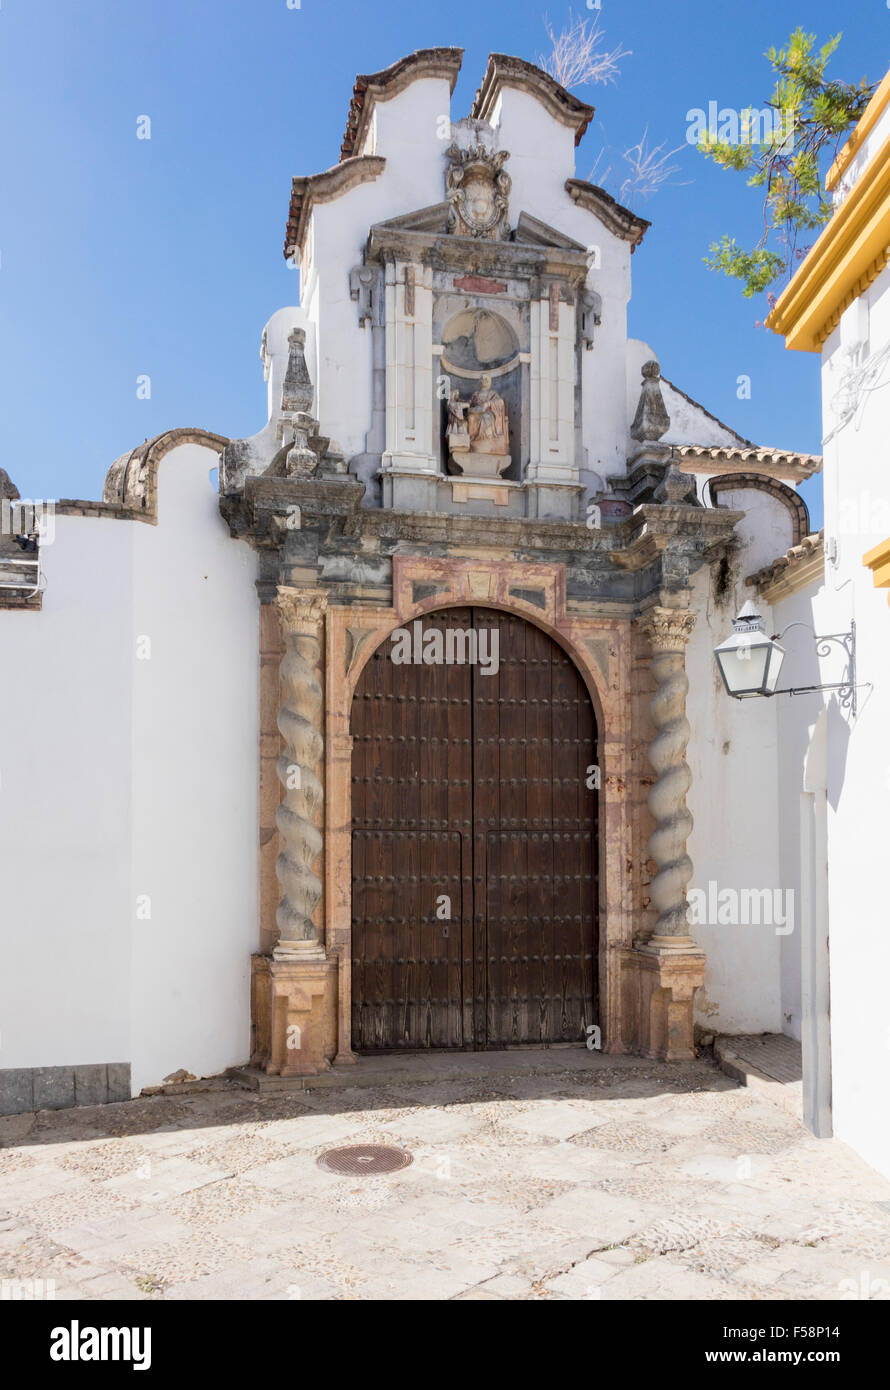 Ancien couvent des capacités dans une rue étroite dans le quartier juif de Cordoue, Espagne, Europe Banque D'Images